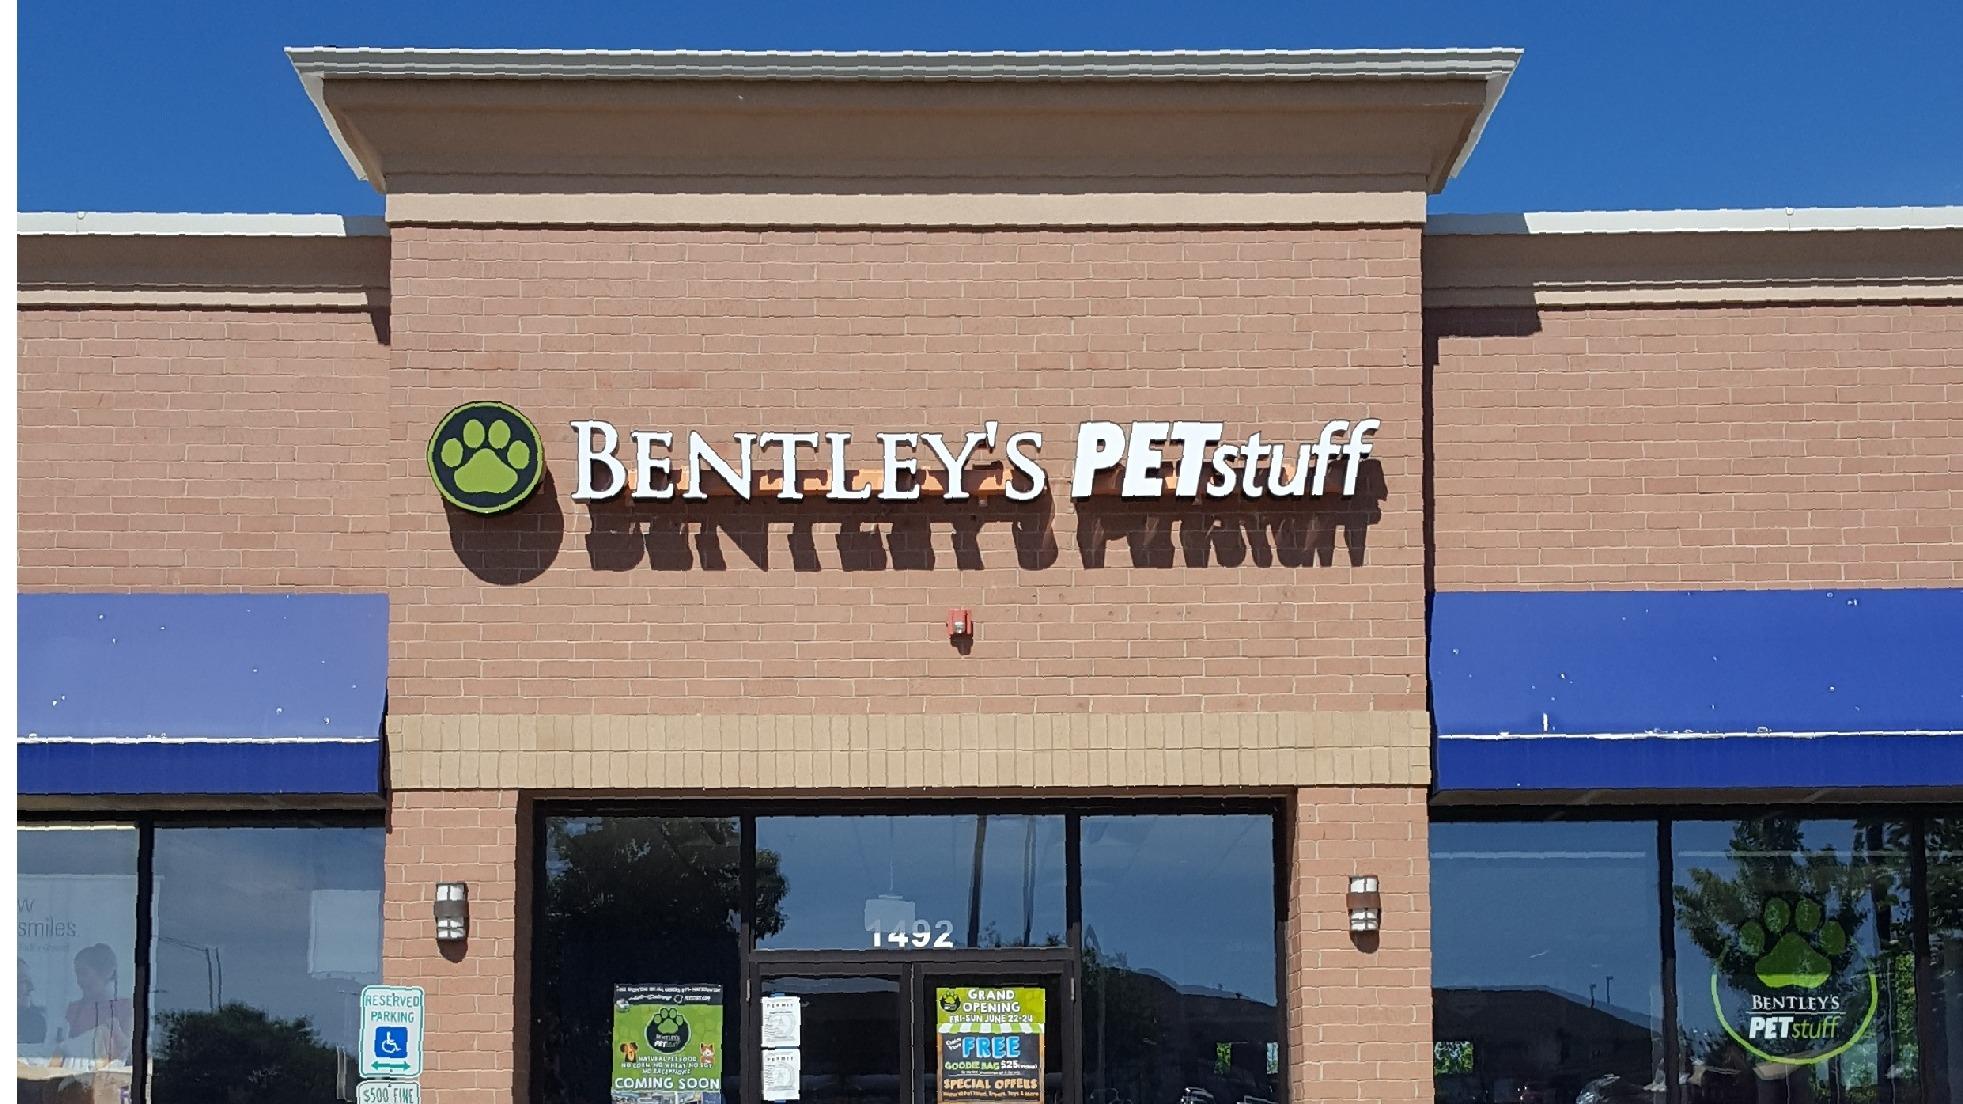 Bentley's Pet Stuff and Grooming